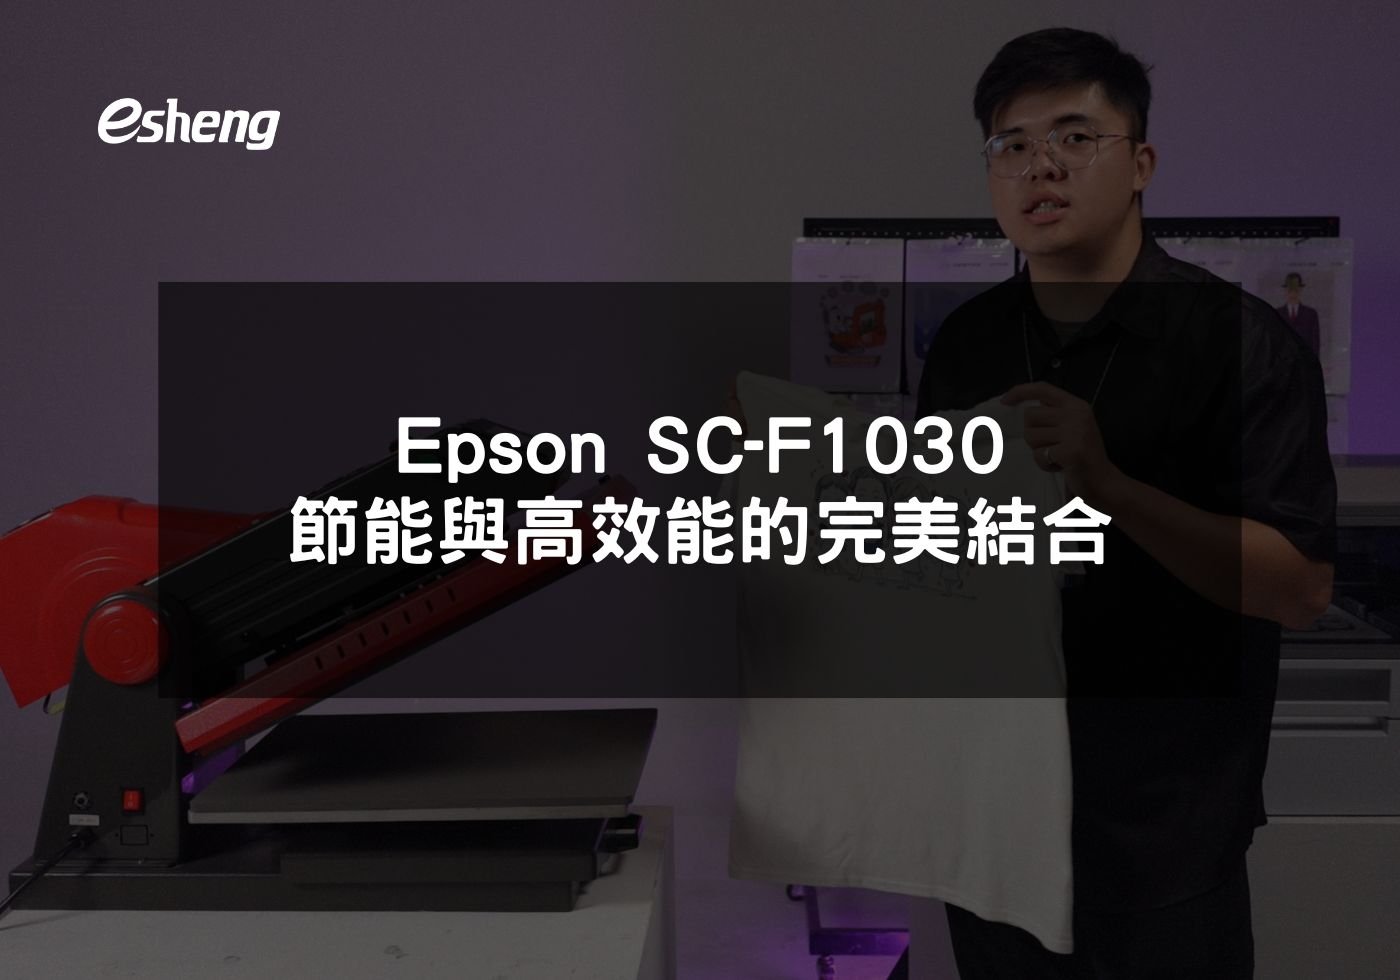 您目前正在查看 Epson SC-F1030 節能與高效能的完美結合